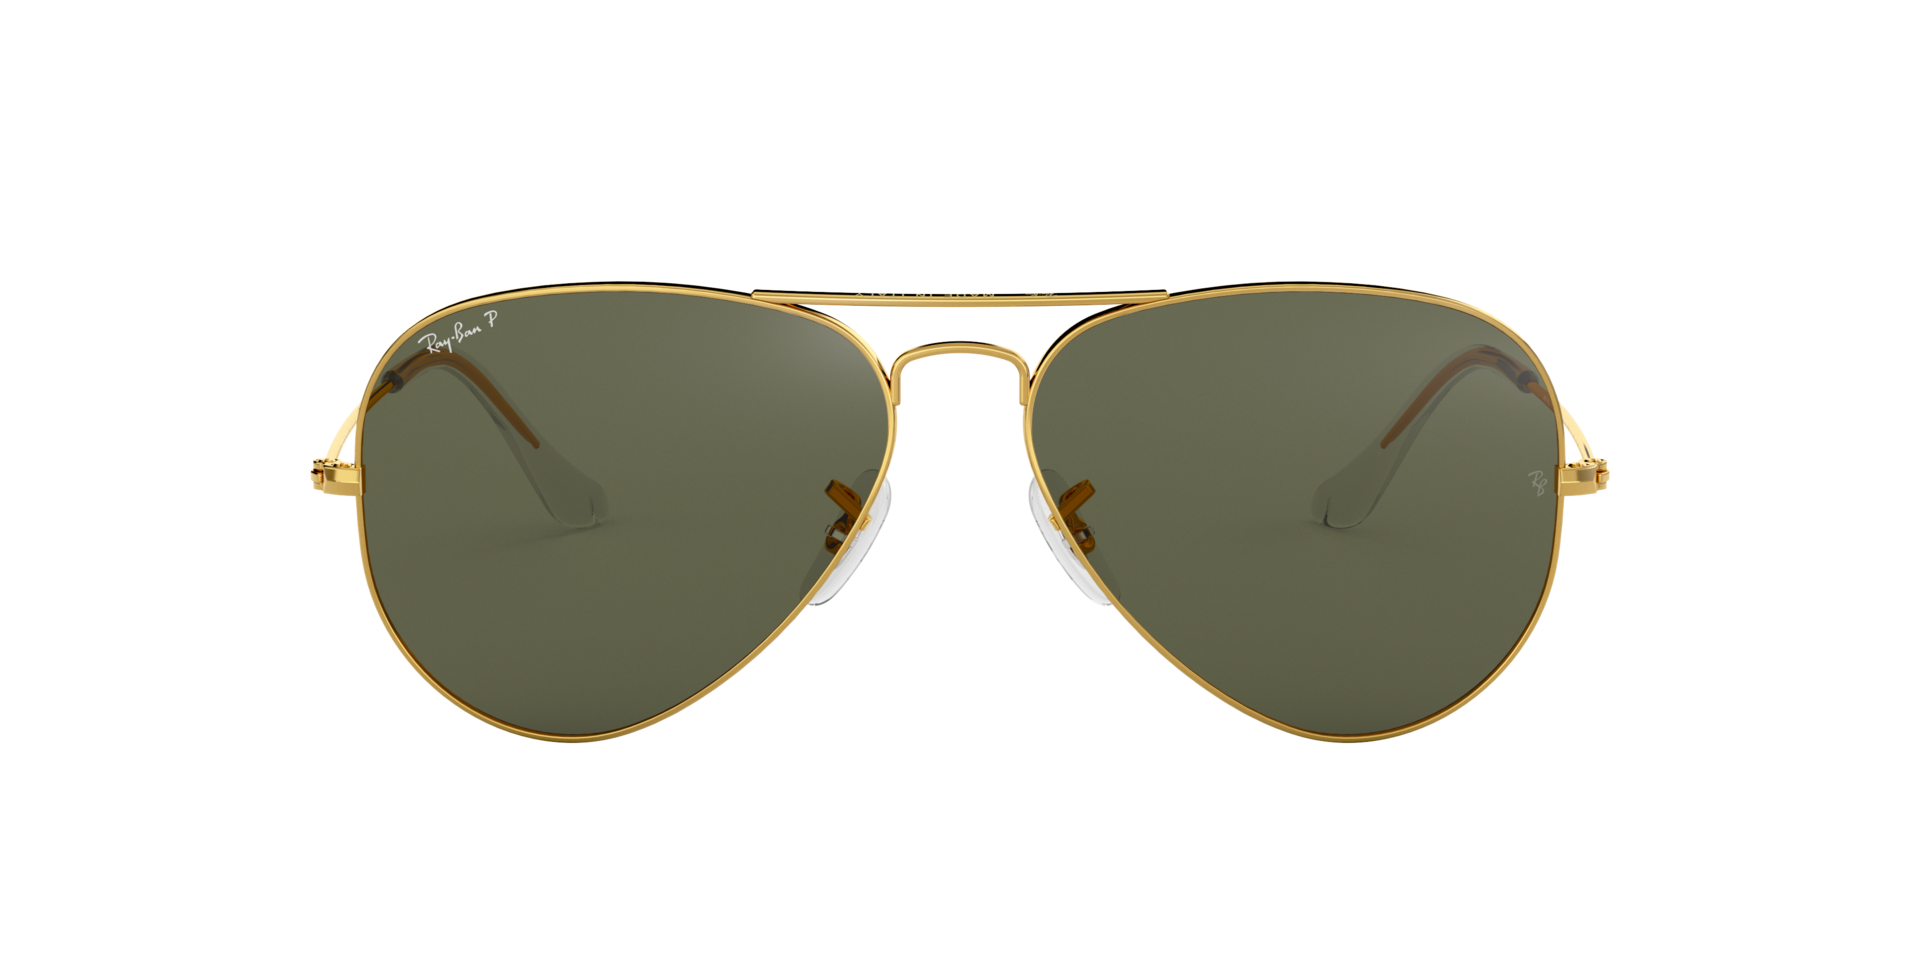 Ray Ban l 湯姆克魯斯同款-飛官框太陽眼鏡偏光墨綠/金(62mm)|Ray Ban 